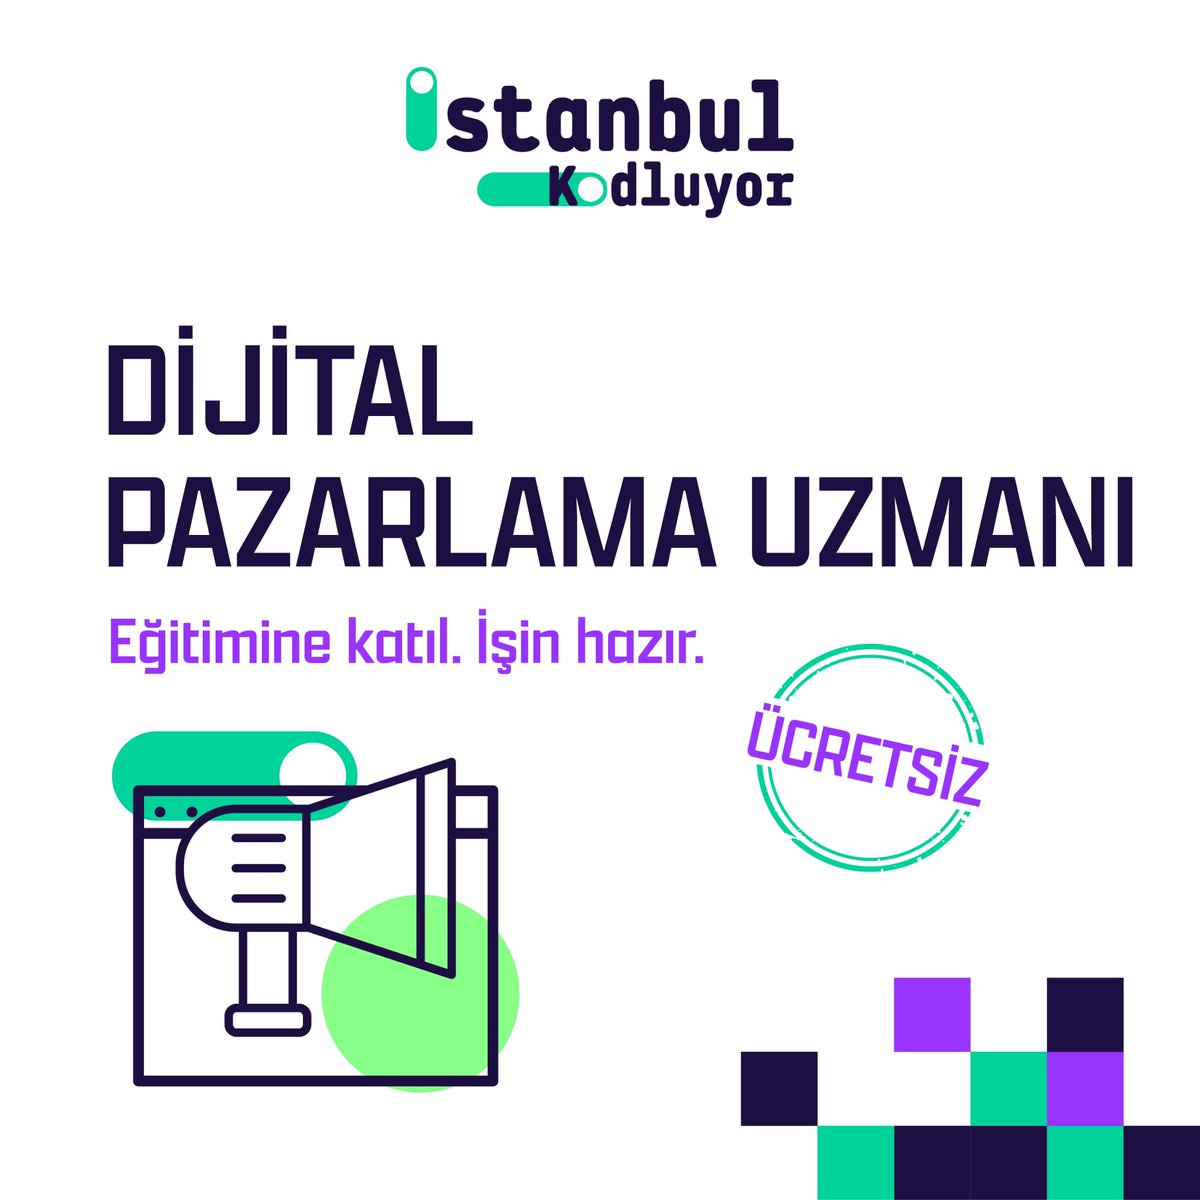 Dijital Pazarlama Uzmanı Eğitimiyle sen de dijital dünyanın sihirbazı ol! 🌟 ➡️ Detaylı bilgi ve başvuru için İstanbul Kodluyor'un web sitesini ziyaret etmeyi unutma: istanbulkodluyor.com Kariyerinde yeni bir adım atmak için hazır ol! 🚀 #İstanbulKodluyor #Tobeto